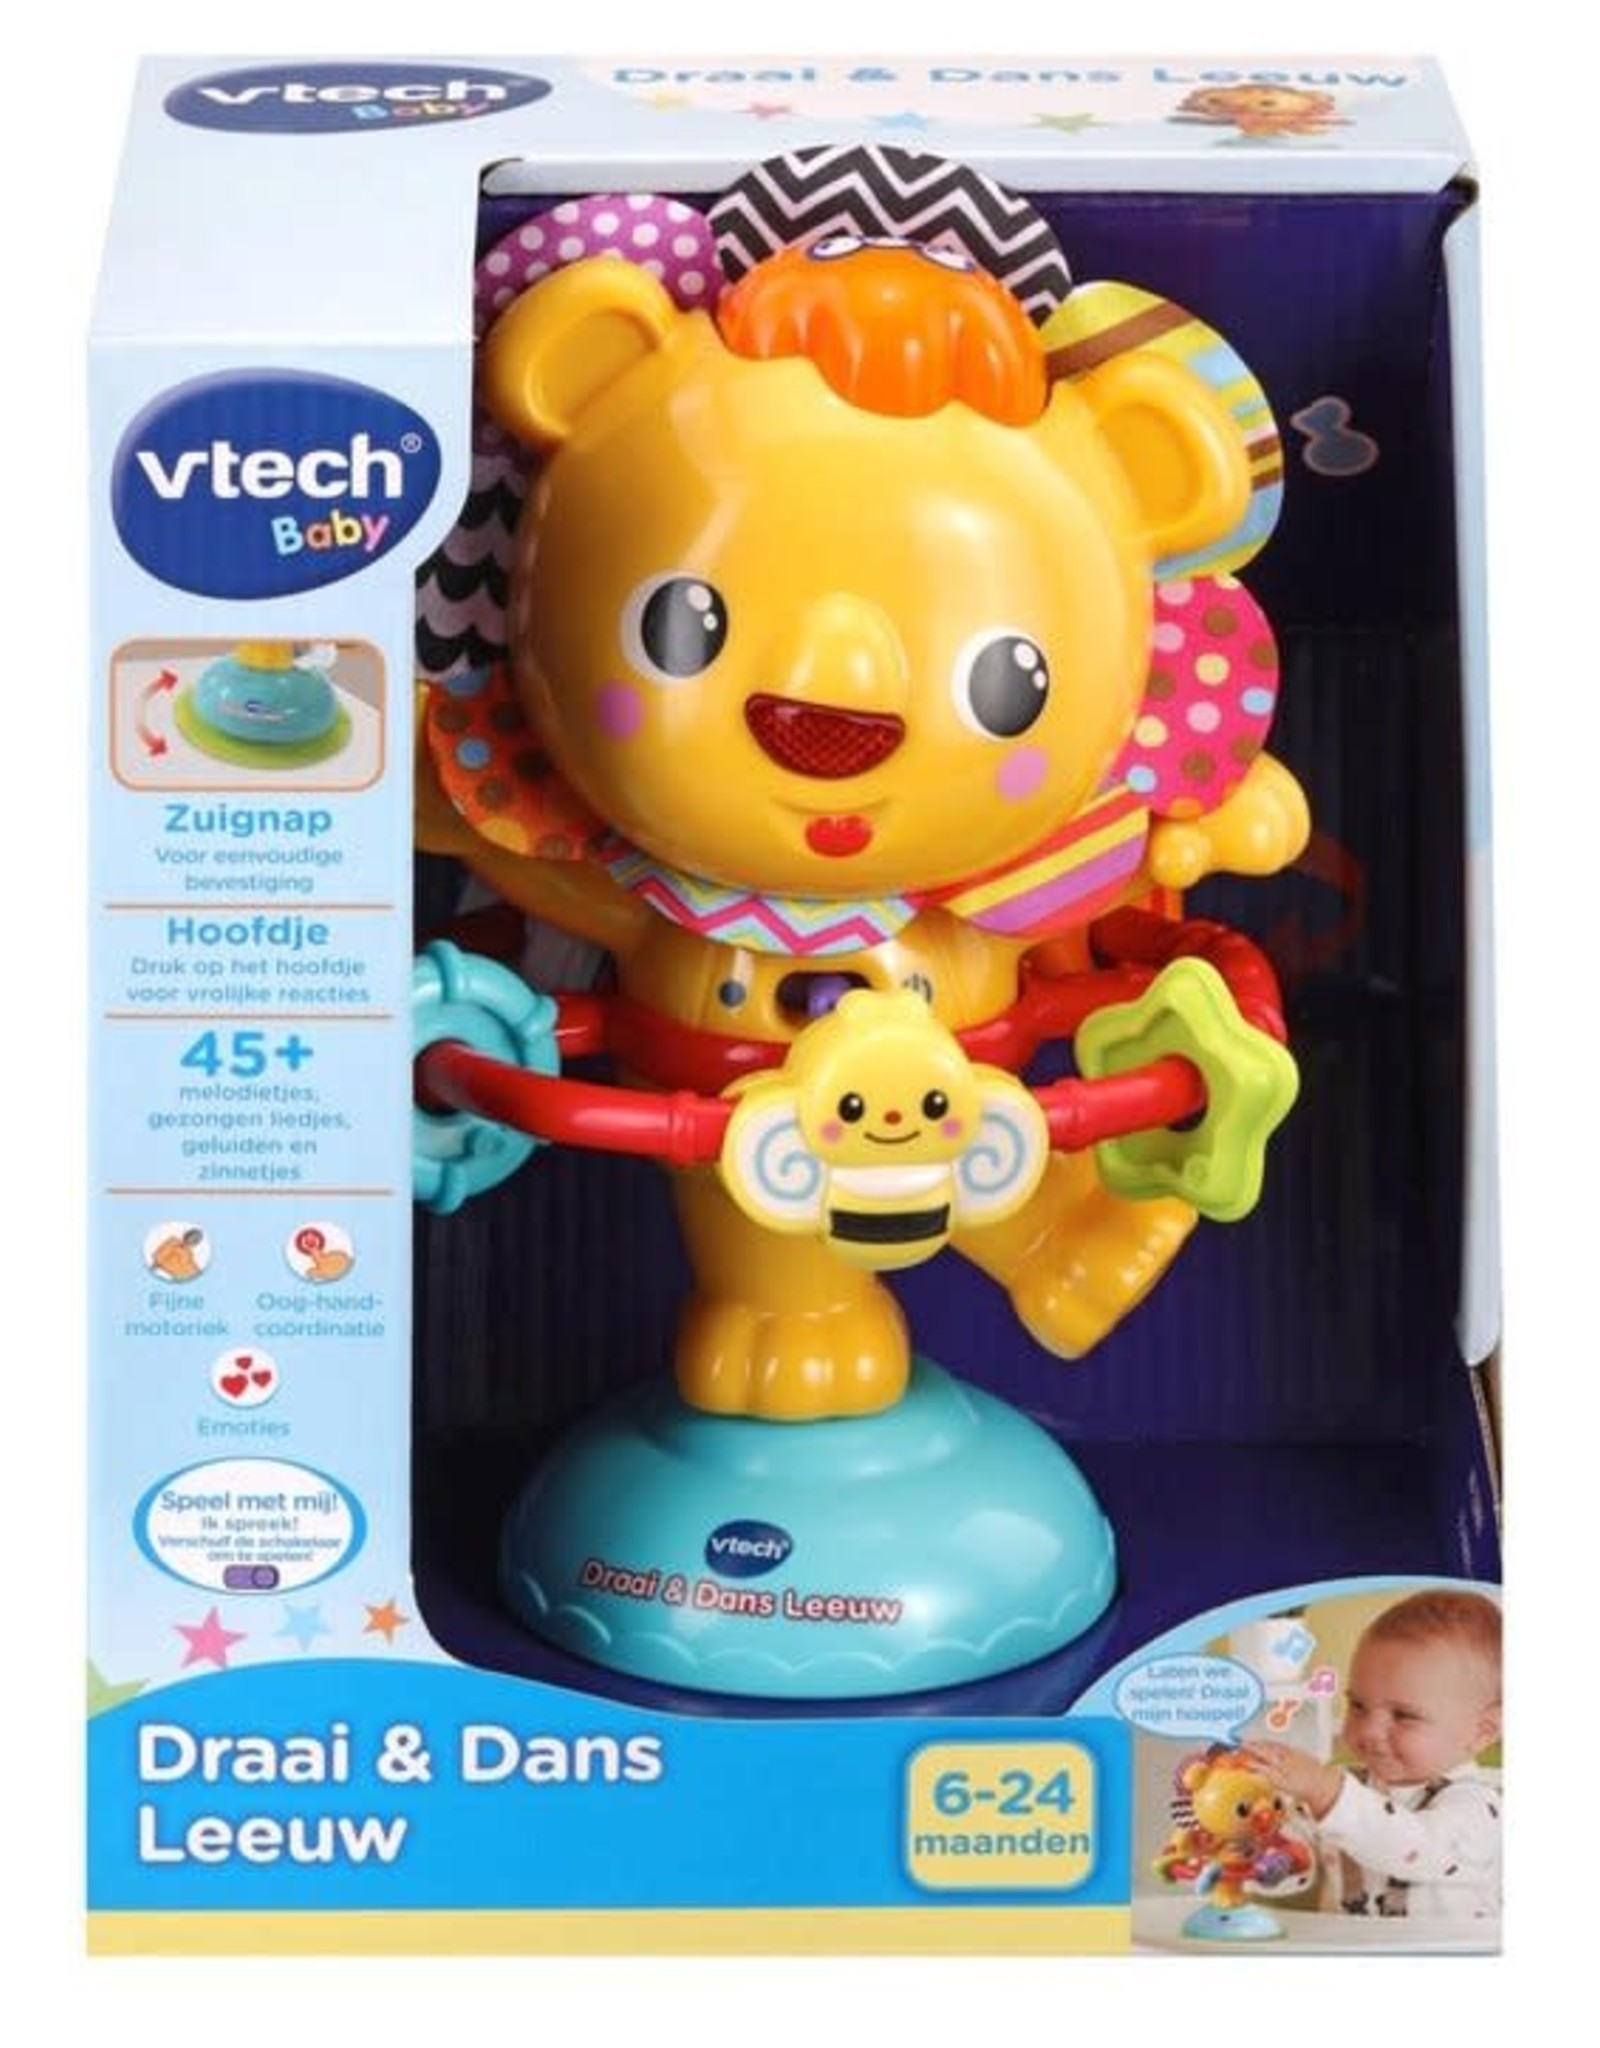 VTECH VTech Baby Draai & Dans Leeuw